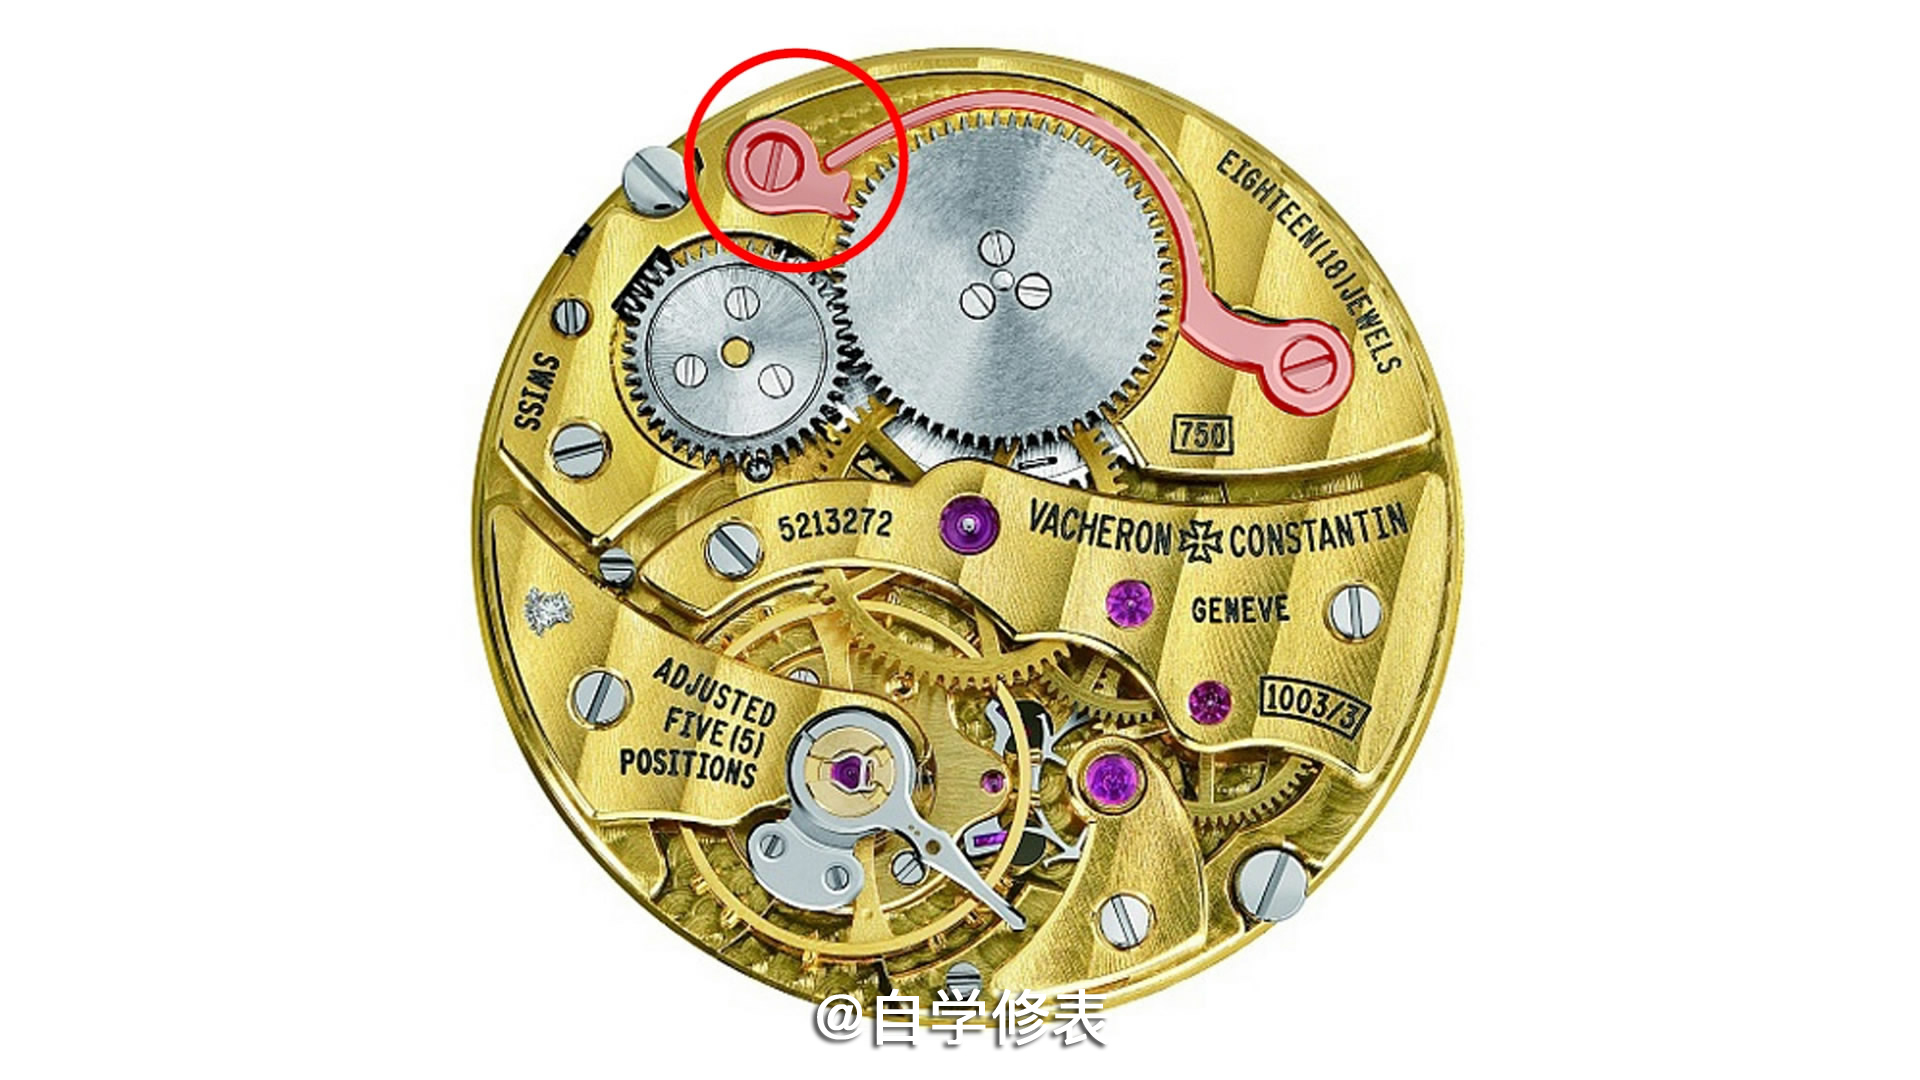 自制透明手表发条盒，结构原理看得明明白白